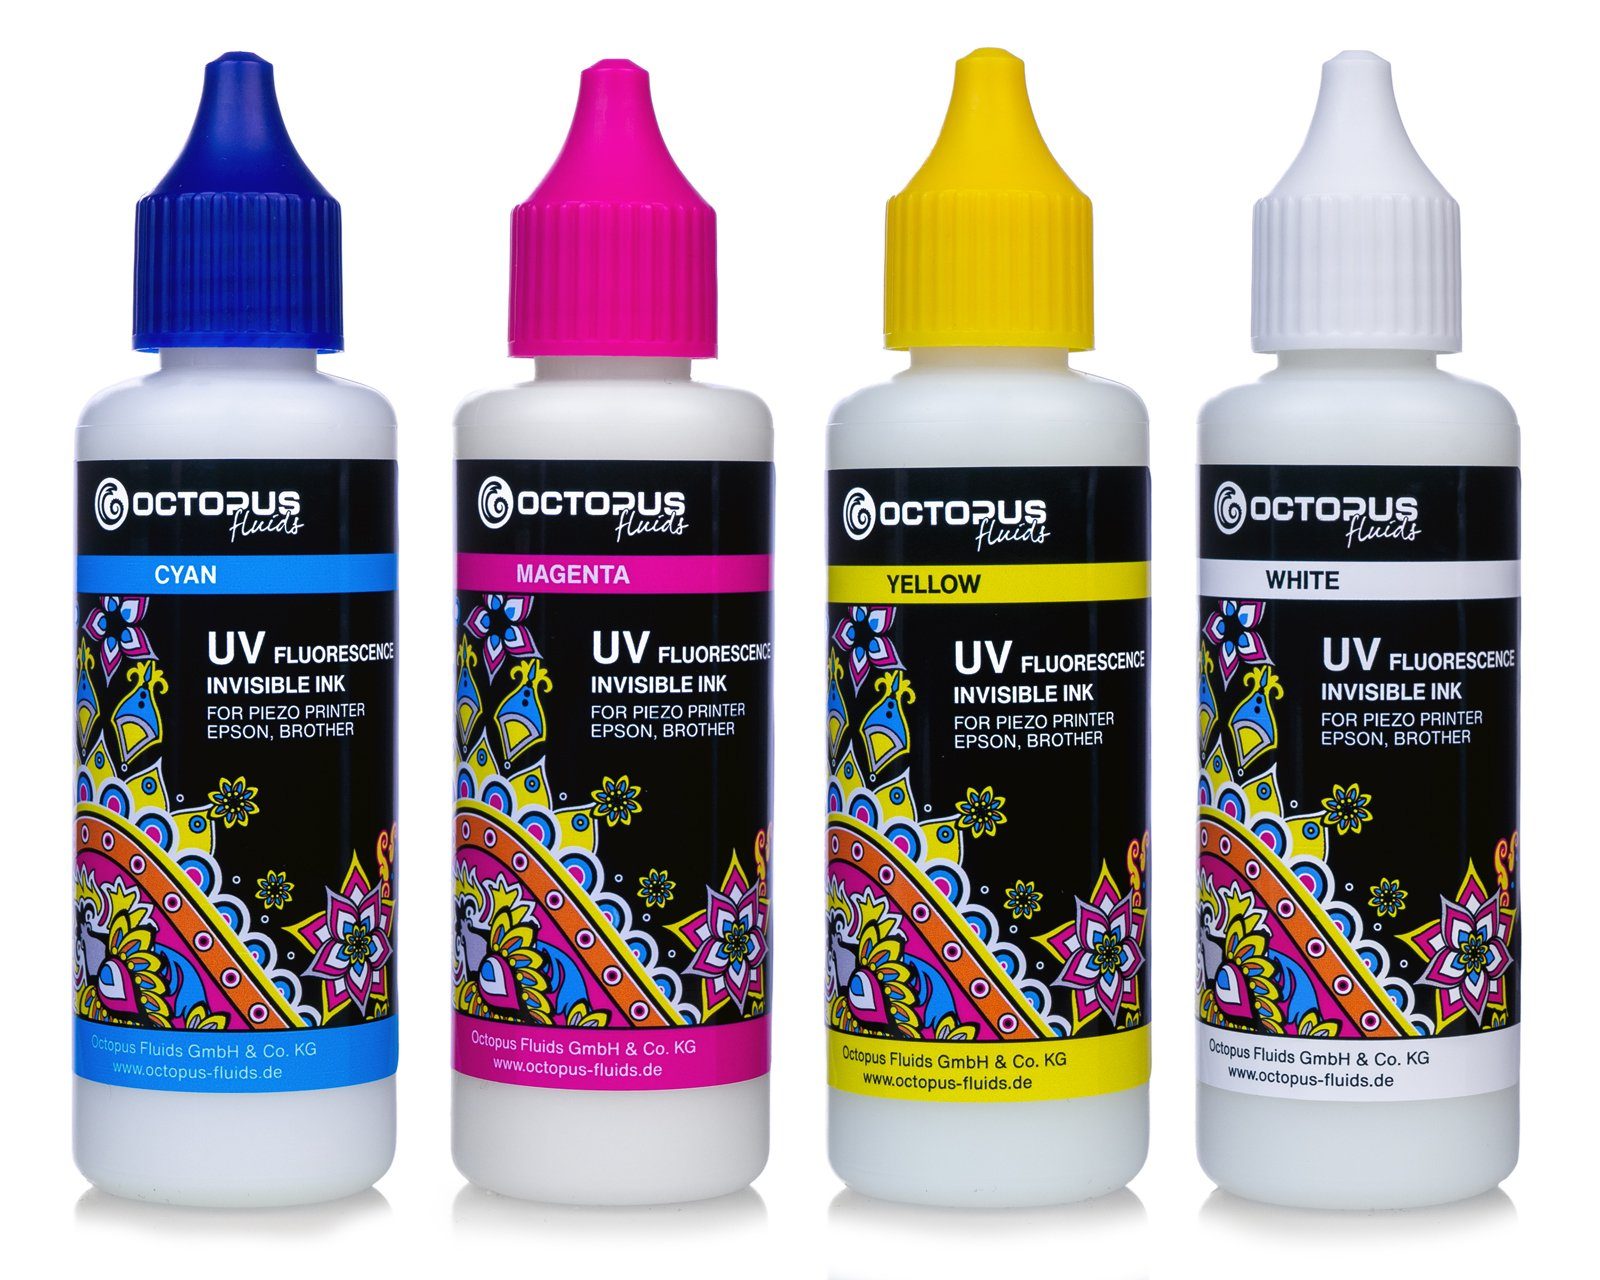 OCTOPUS Fluids 4x 50ml UV Fluorescence invisible ink for Epson, Brother, white, cyan, Nachfülltinte (für Epson,Brother, x)